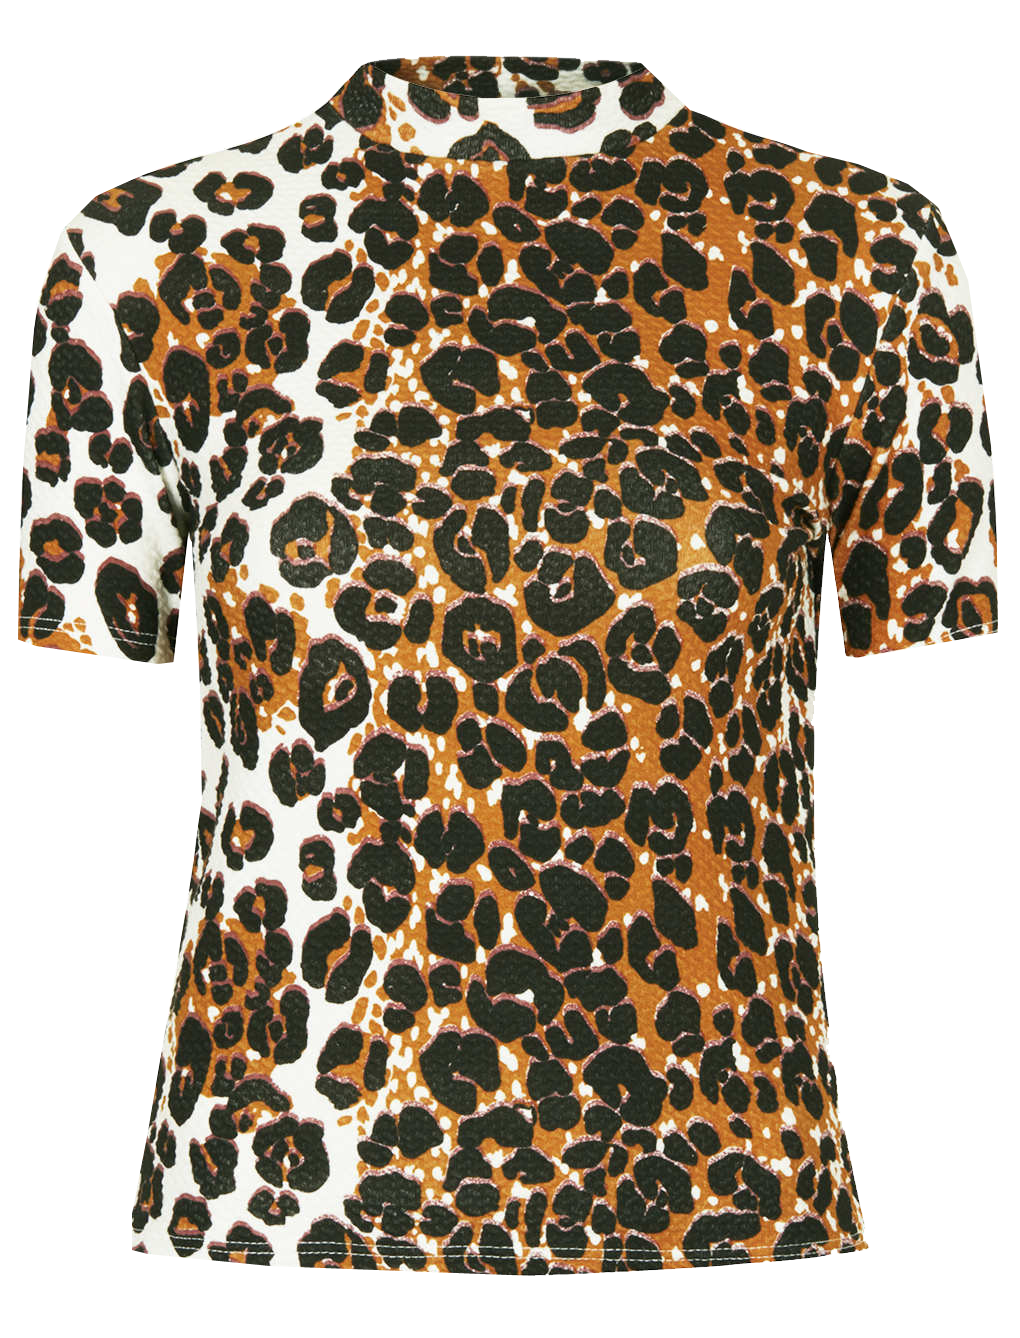 Topshop leopard print high neck top